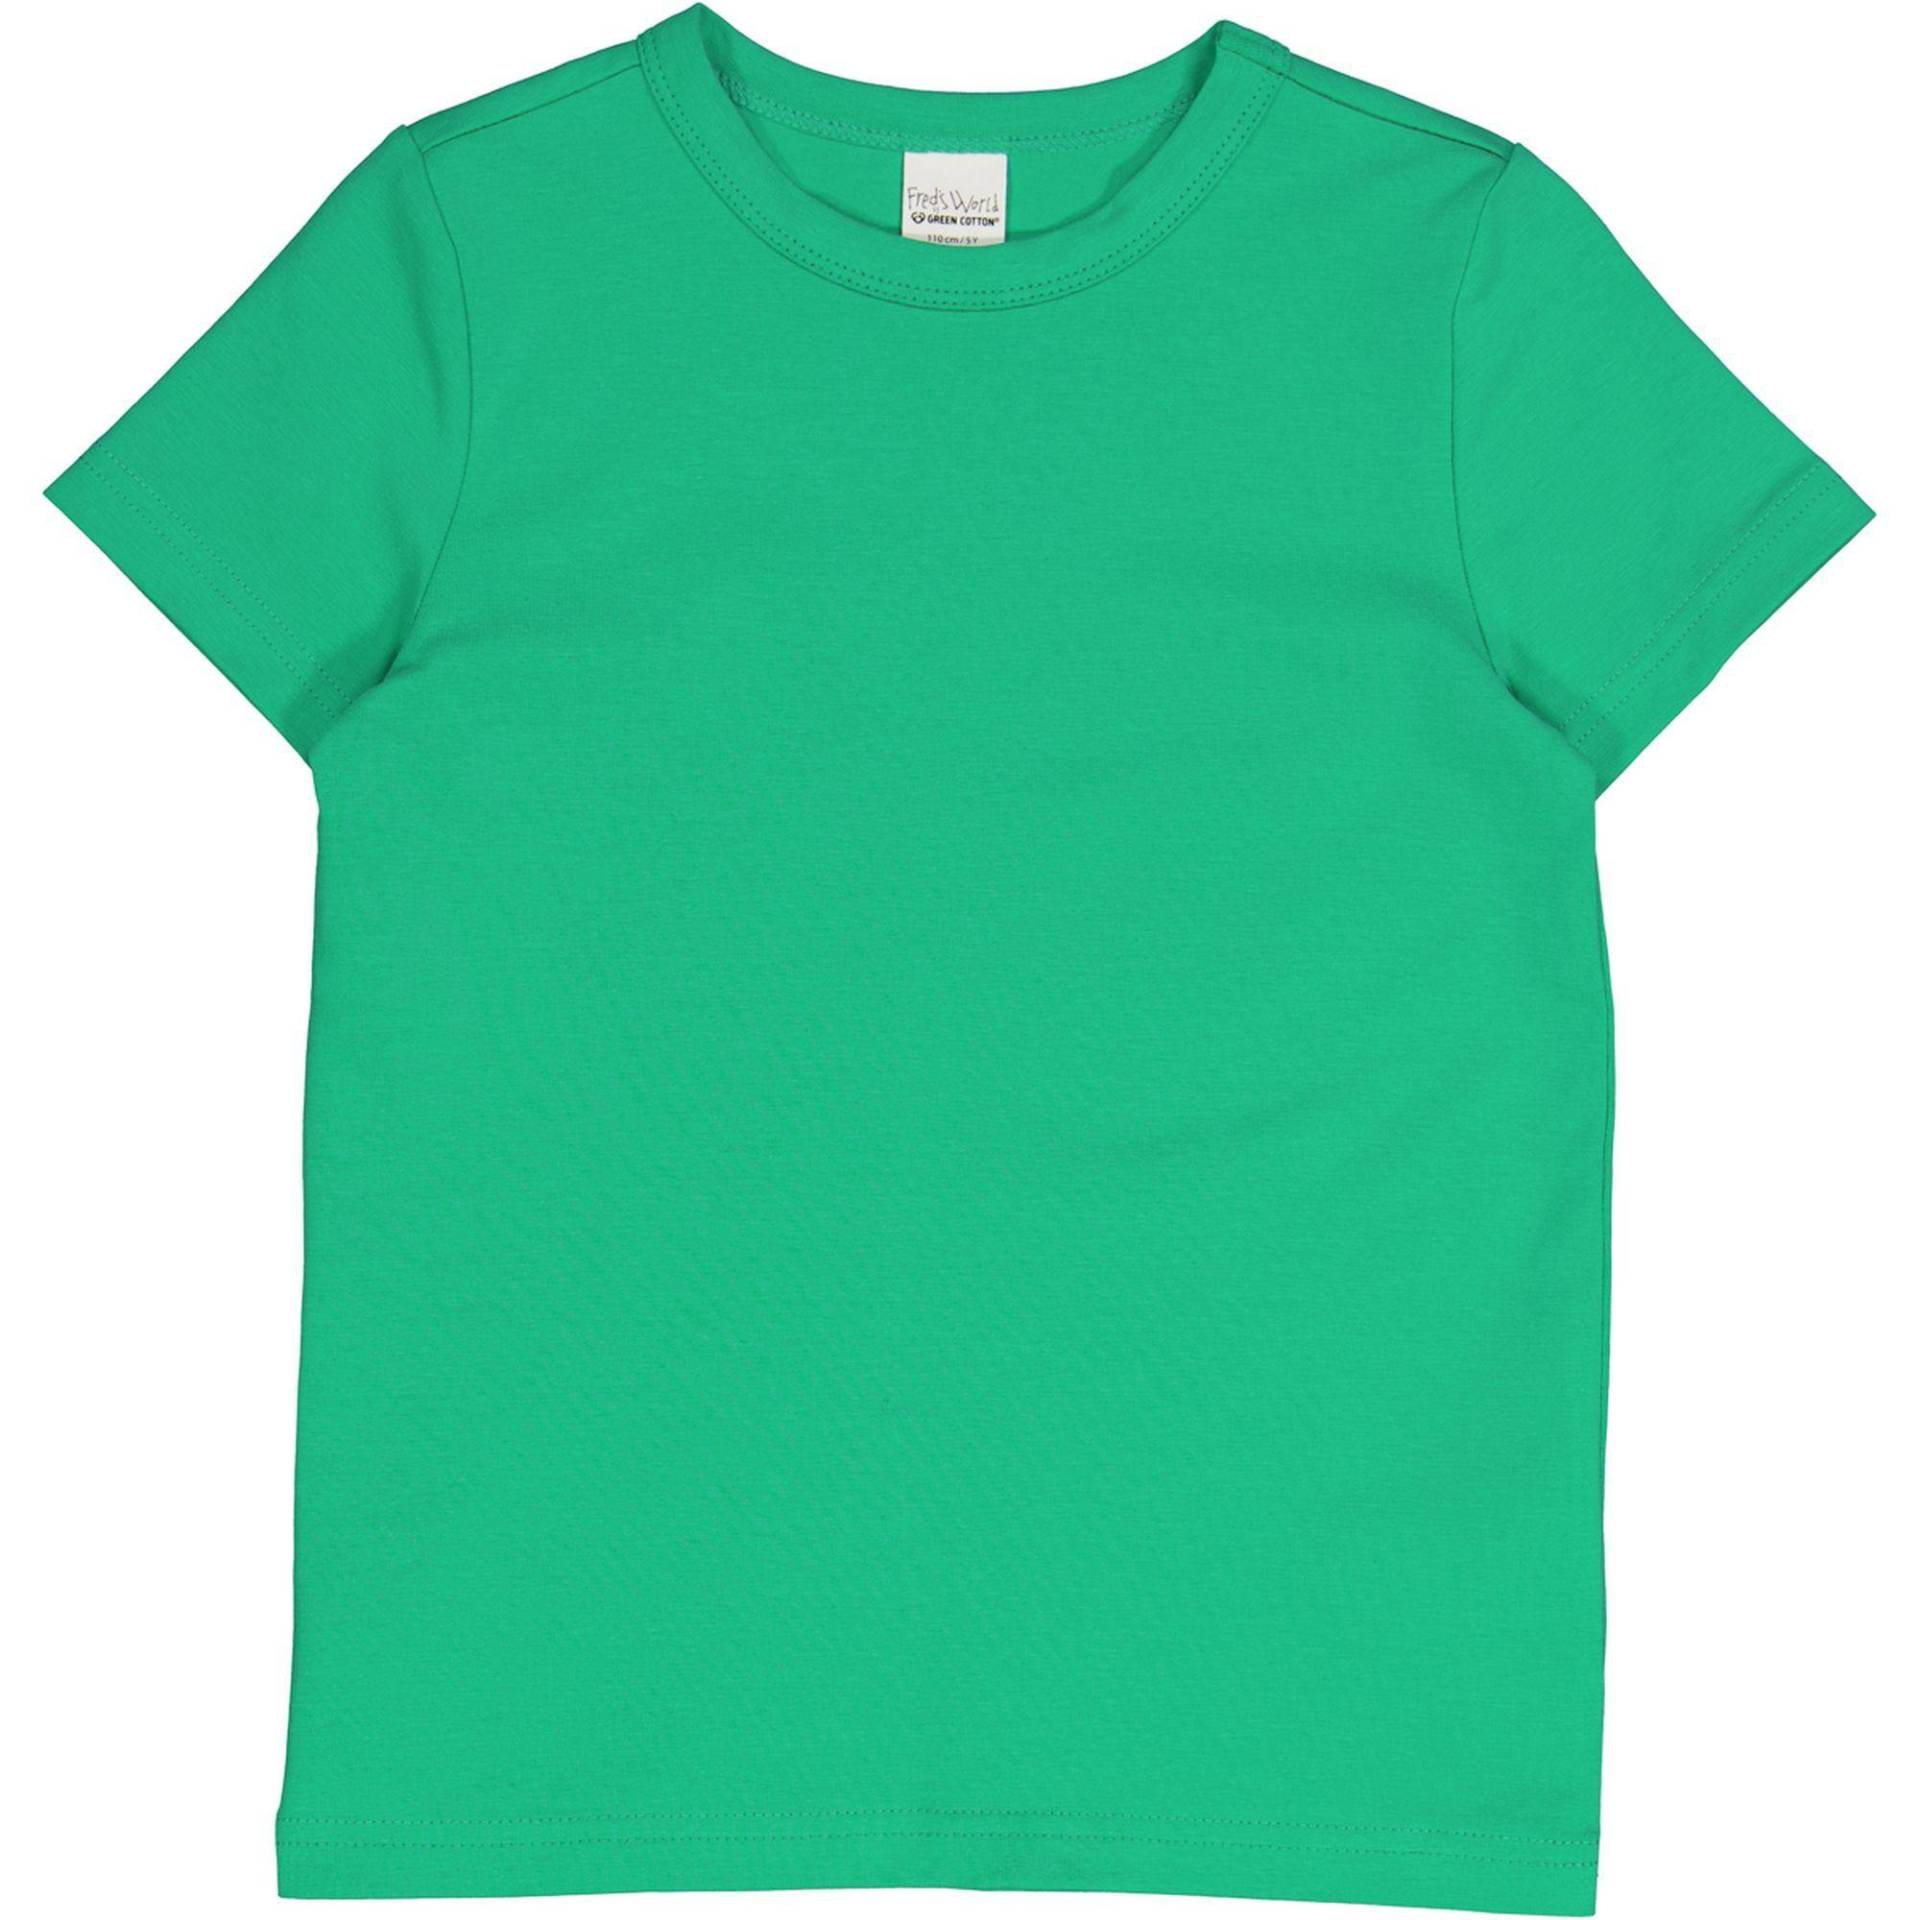 T-shirt Unisex  104 von Fred`s World by Green Cotton